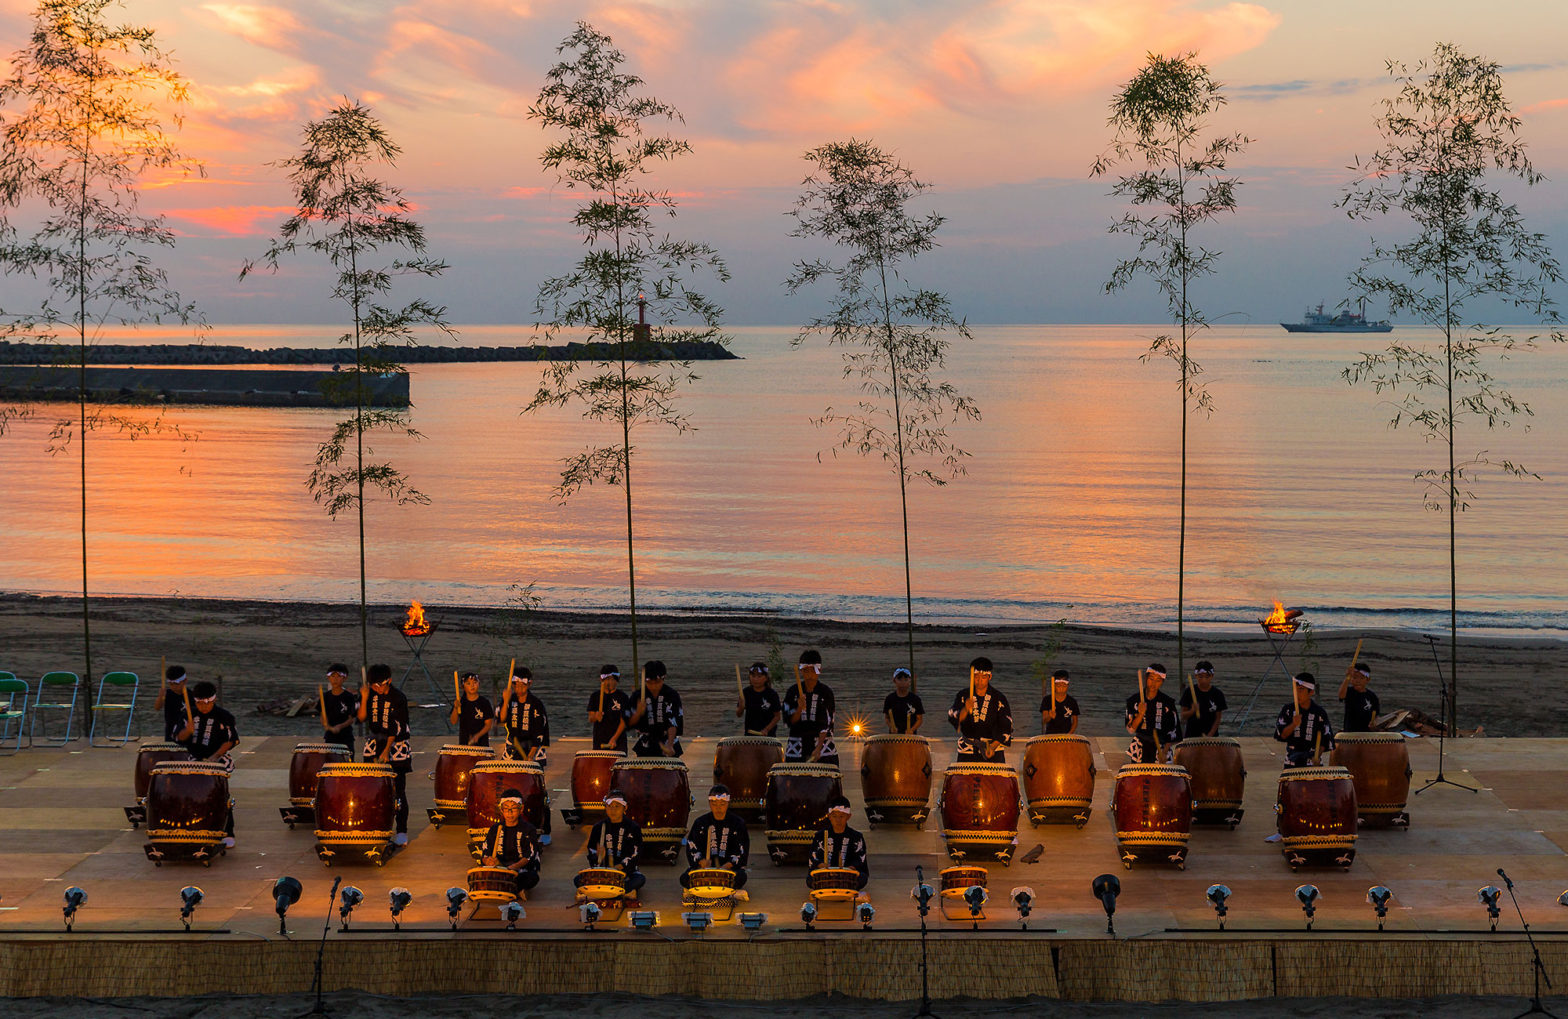 Izu Peninsula Drum Festival